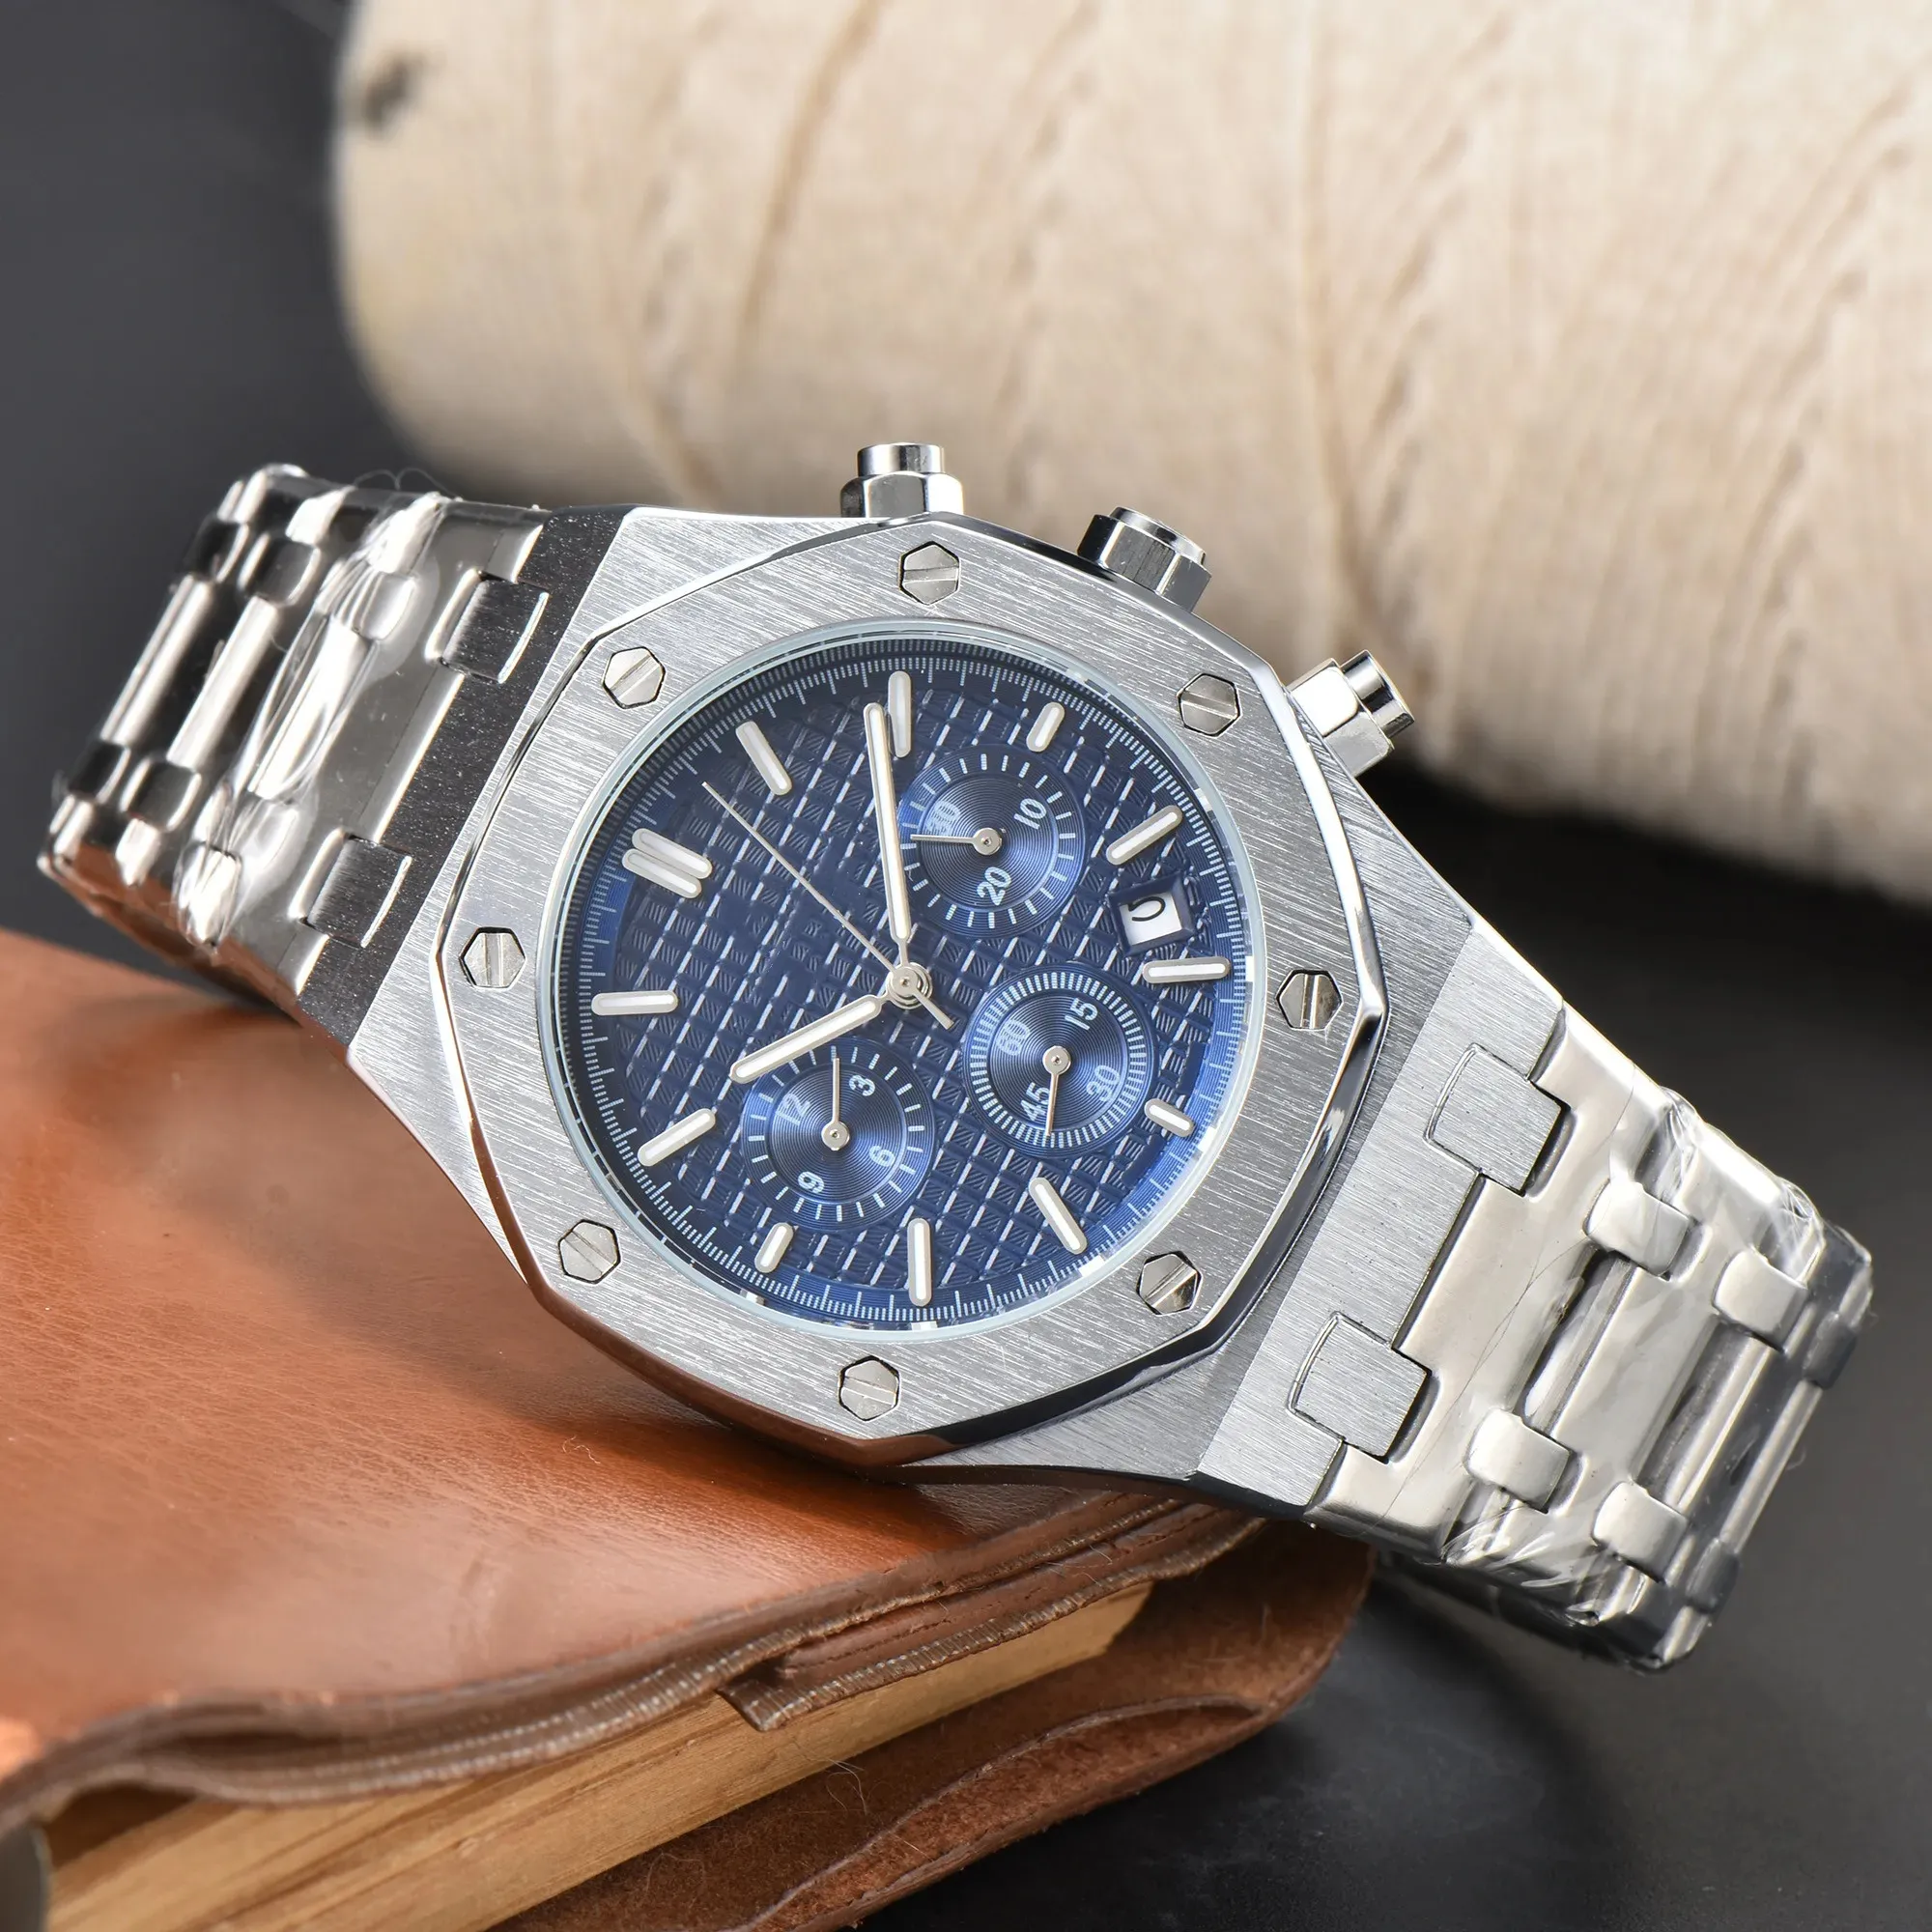 A P Mens Aude 손목 시계 6 개의 바늘 모든 다이얼 작업 쿼츠 시계 고품질 최고 브랜드 크로노 그래프 시계 스틸 벨트 패션 남성 감시